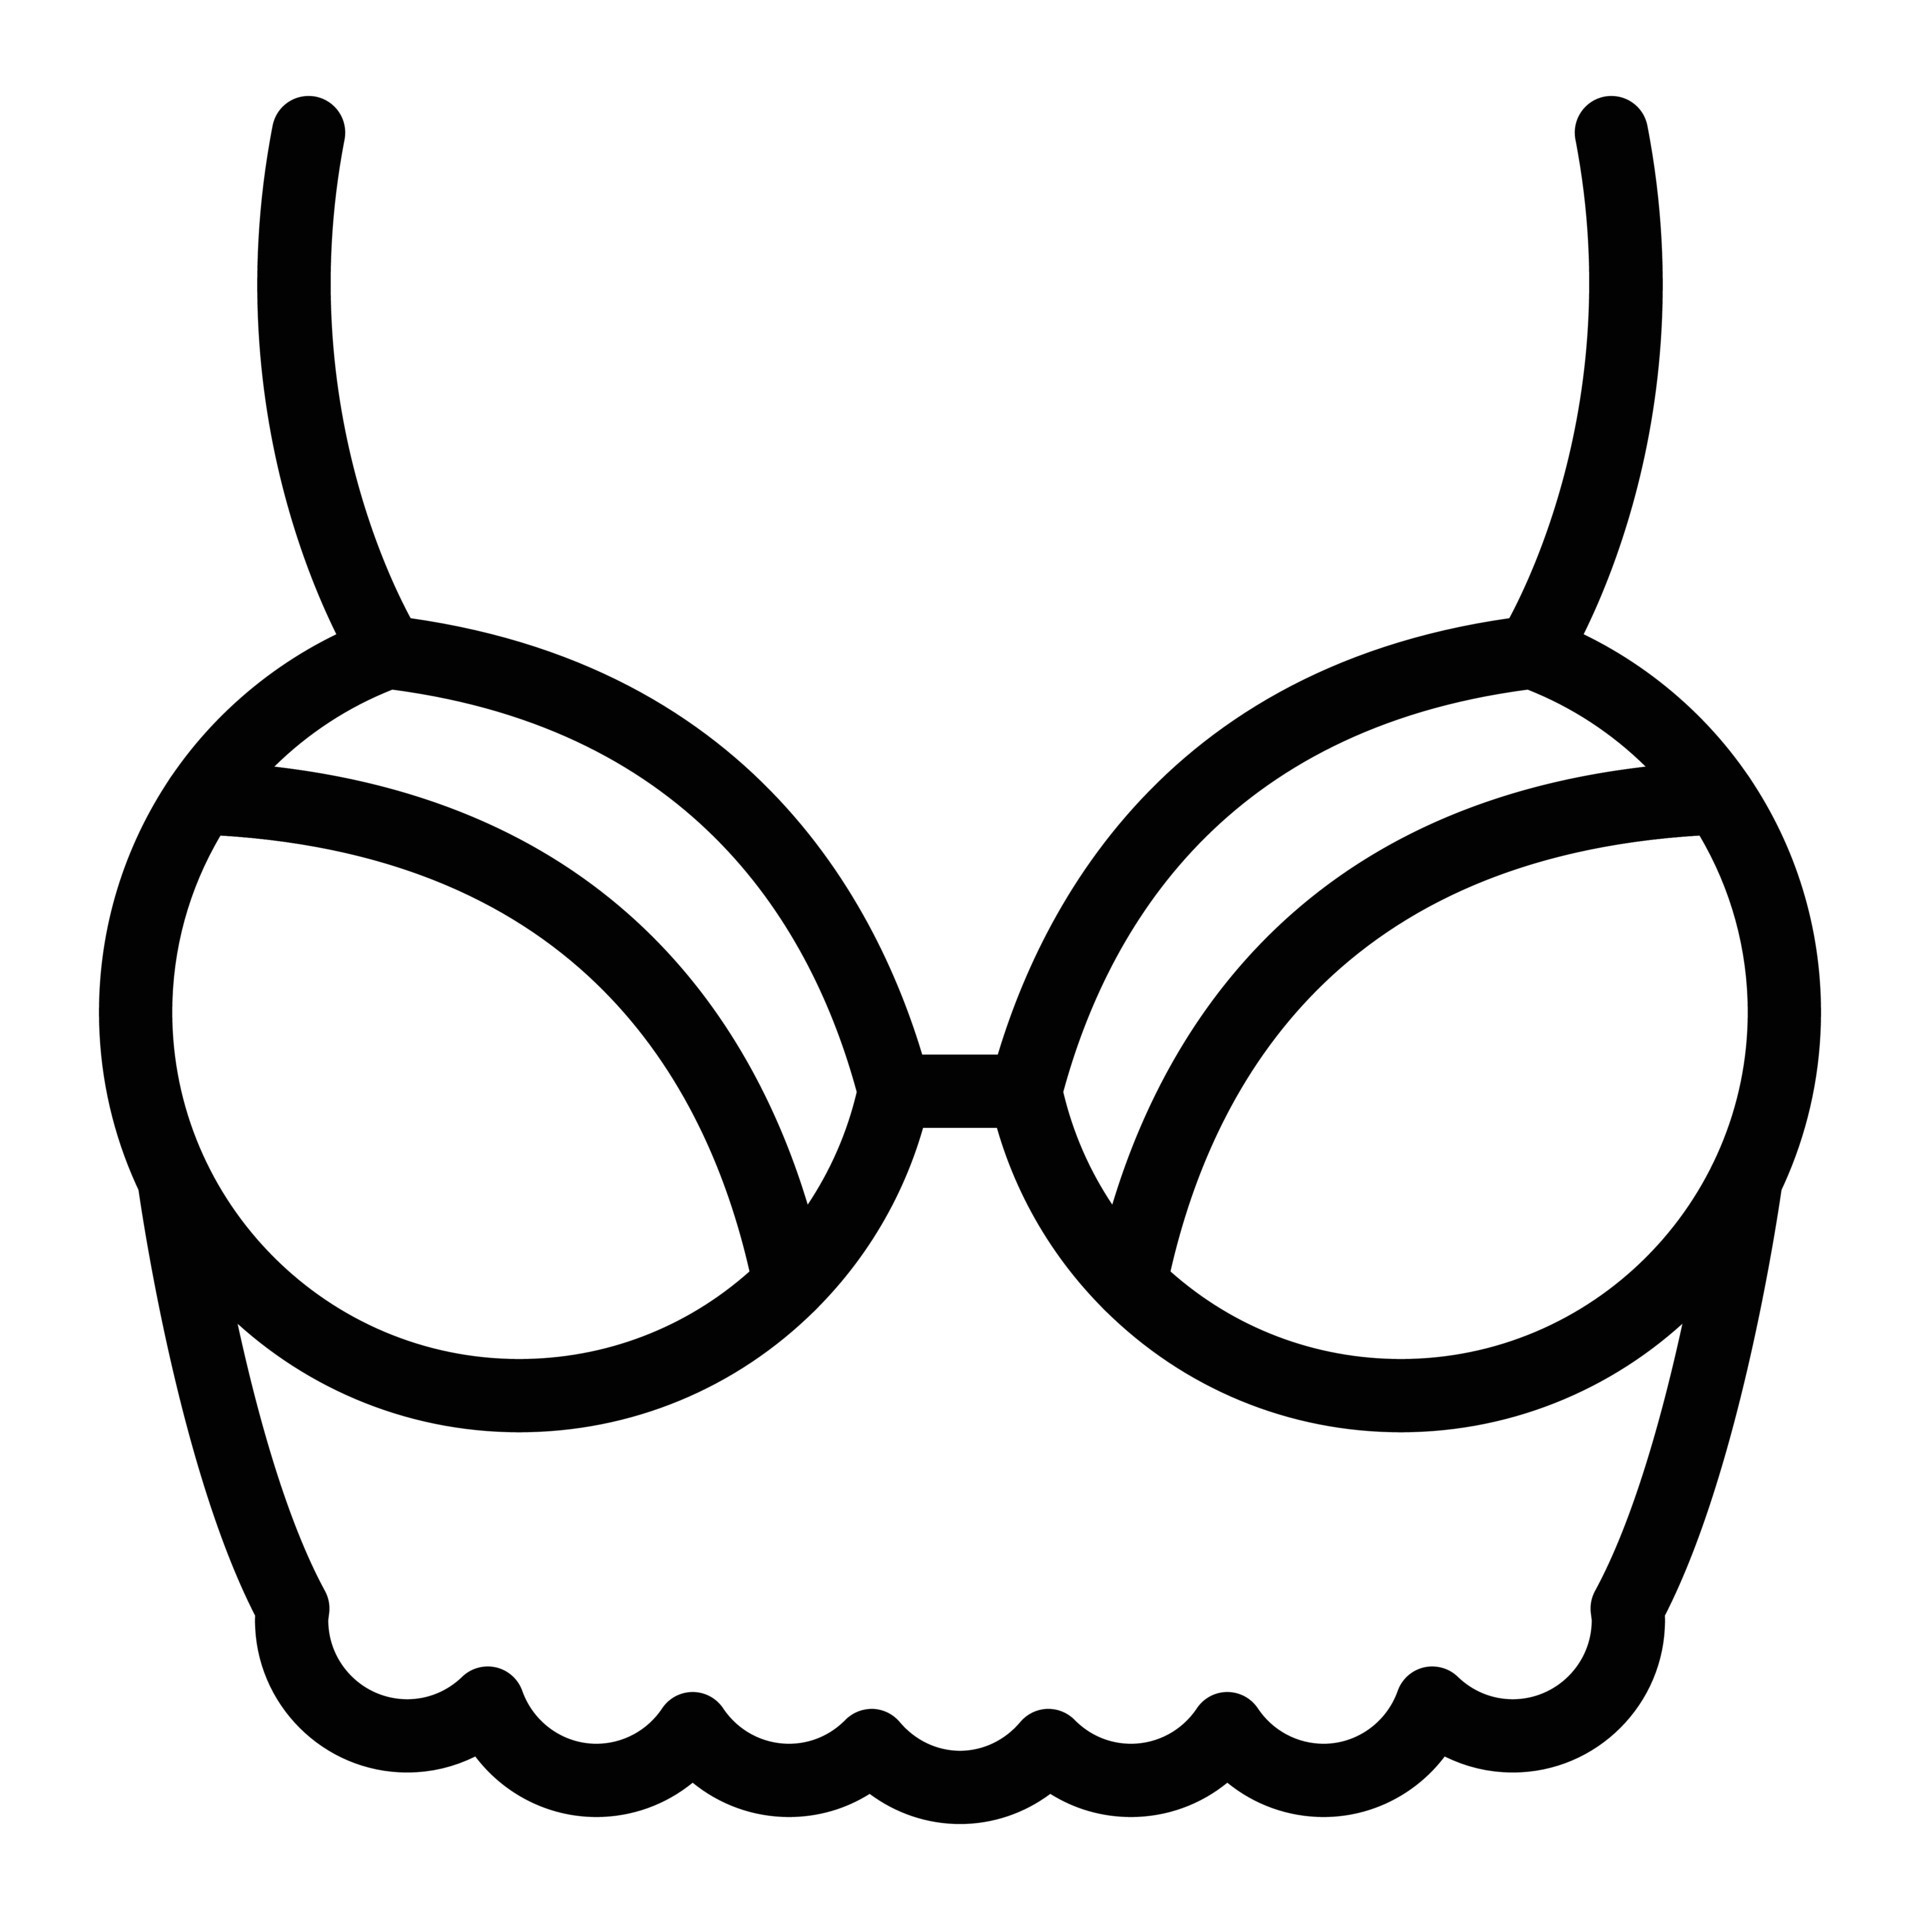 Bralette bra icon, outline style 15666327 Vector Art at Vecteezy